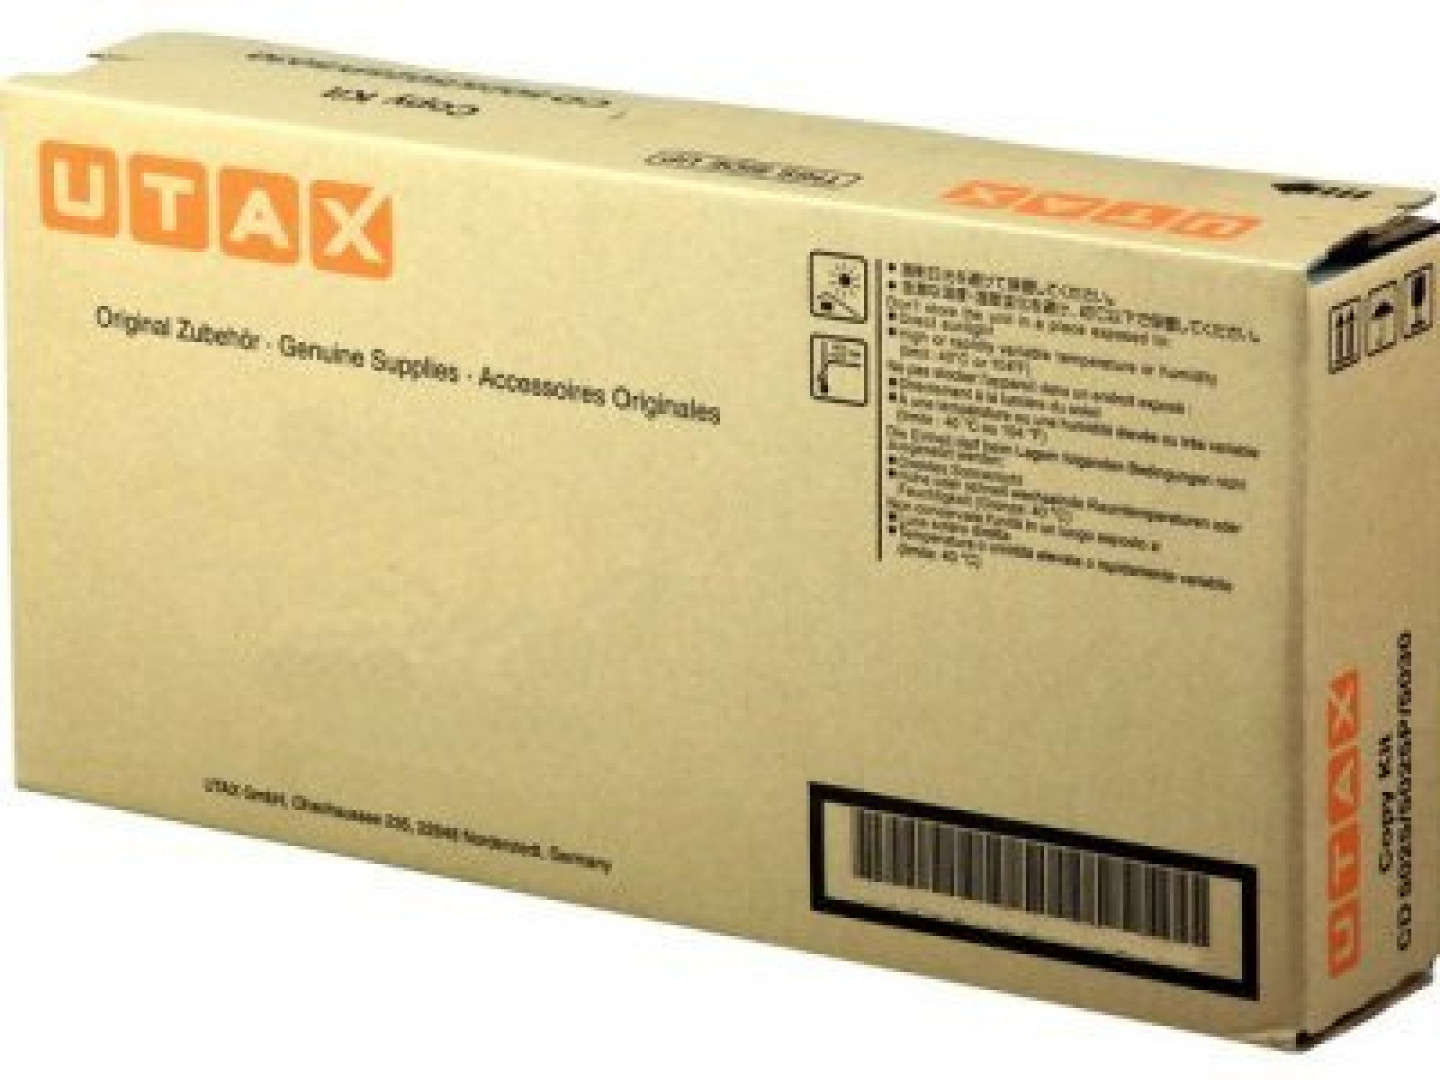 UTAX 613011110 cartuccia toner 1 pz Originale Nero